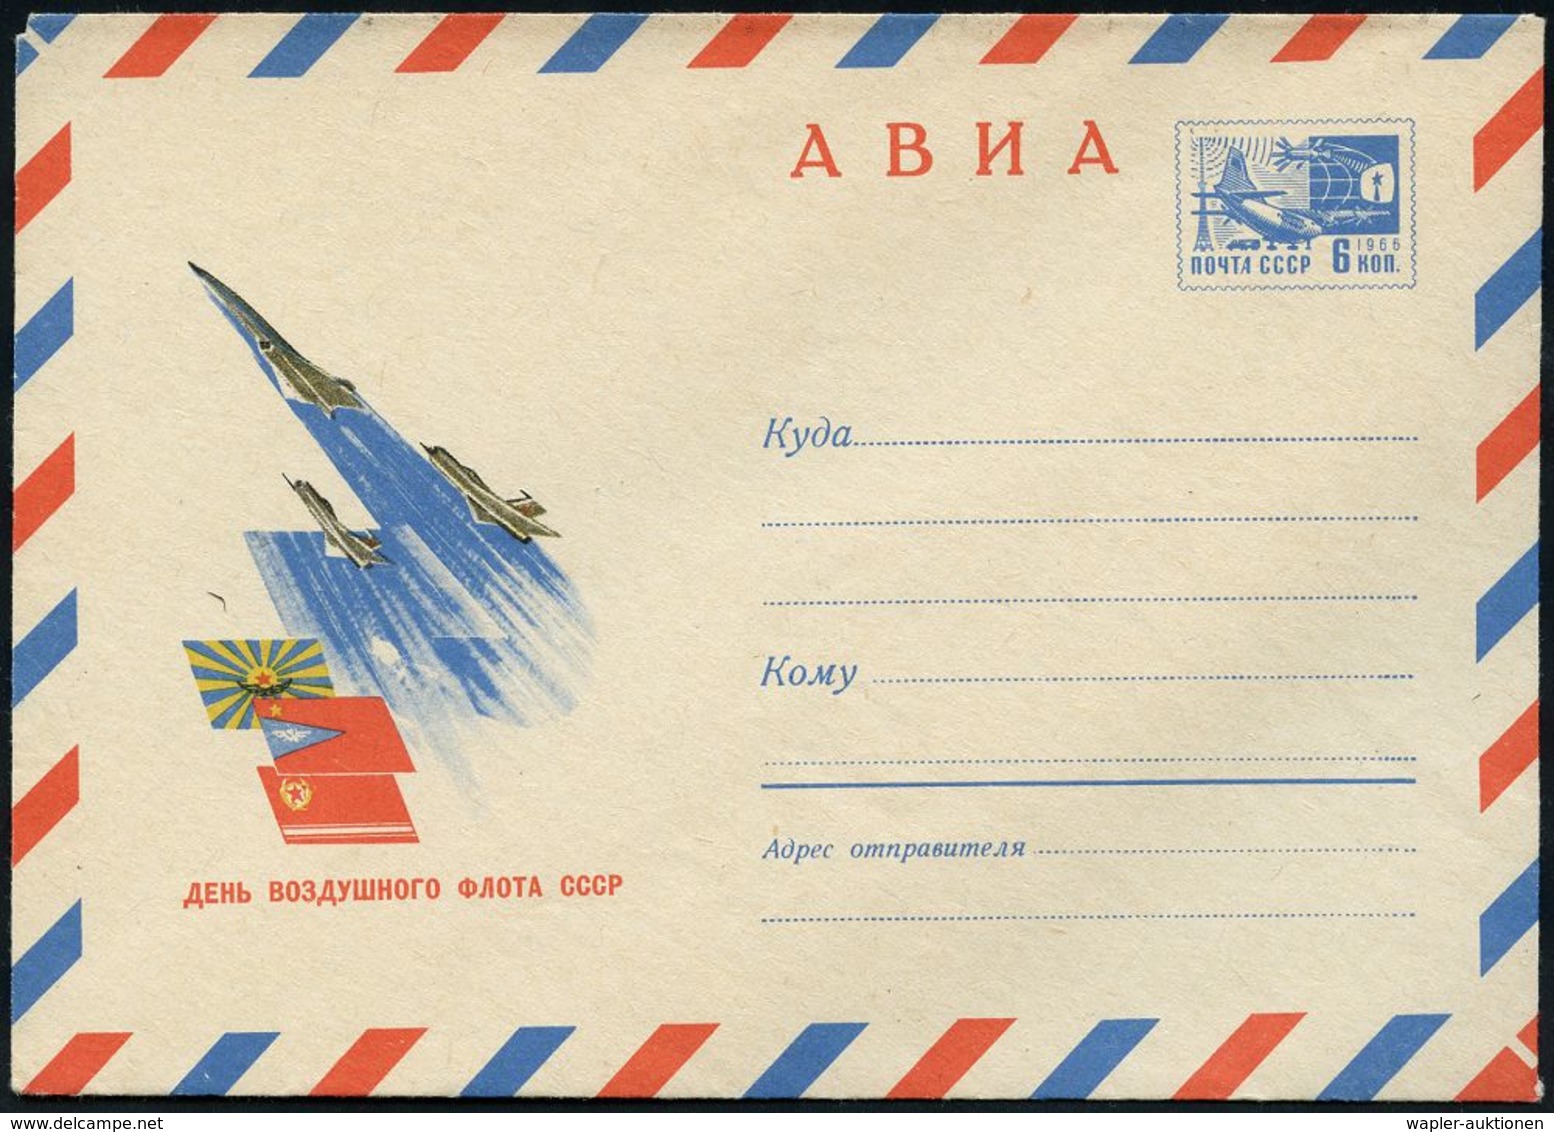 MILITÄRFLUGWESEN / MILITÄRFLUGZEUGE : UdSSR 1969 6 Kop. LU Luft- U. Raumfahrt, Blau: Tag Der Sowjet. Luftflotte = Übersc - Aerei